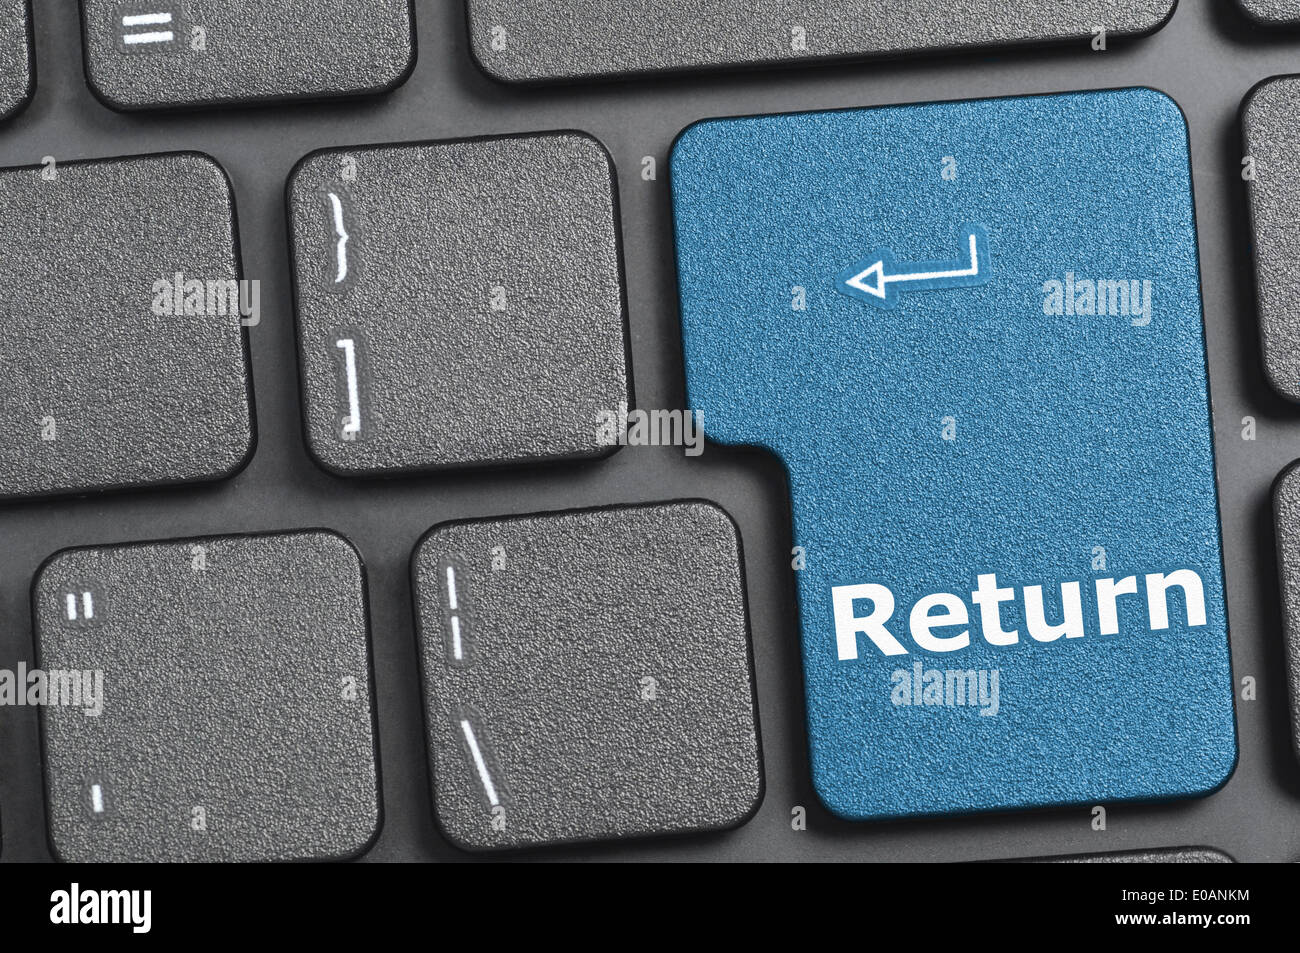 Return-Taste auf der Tastatur Stockfotografie - Alamy